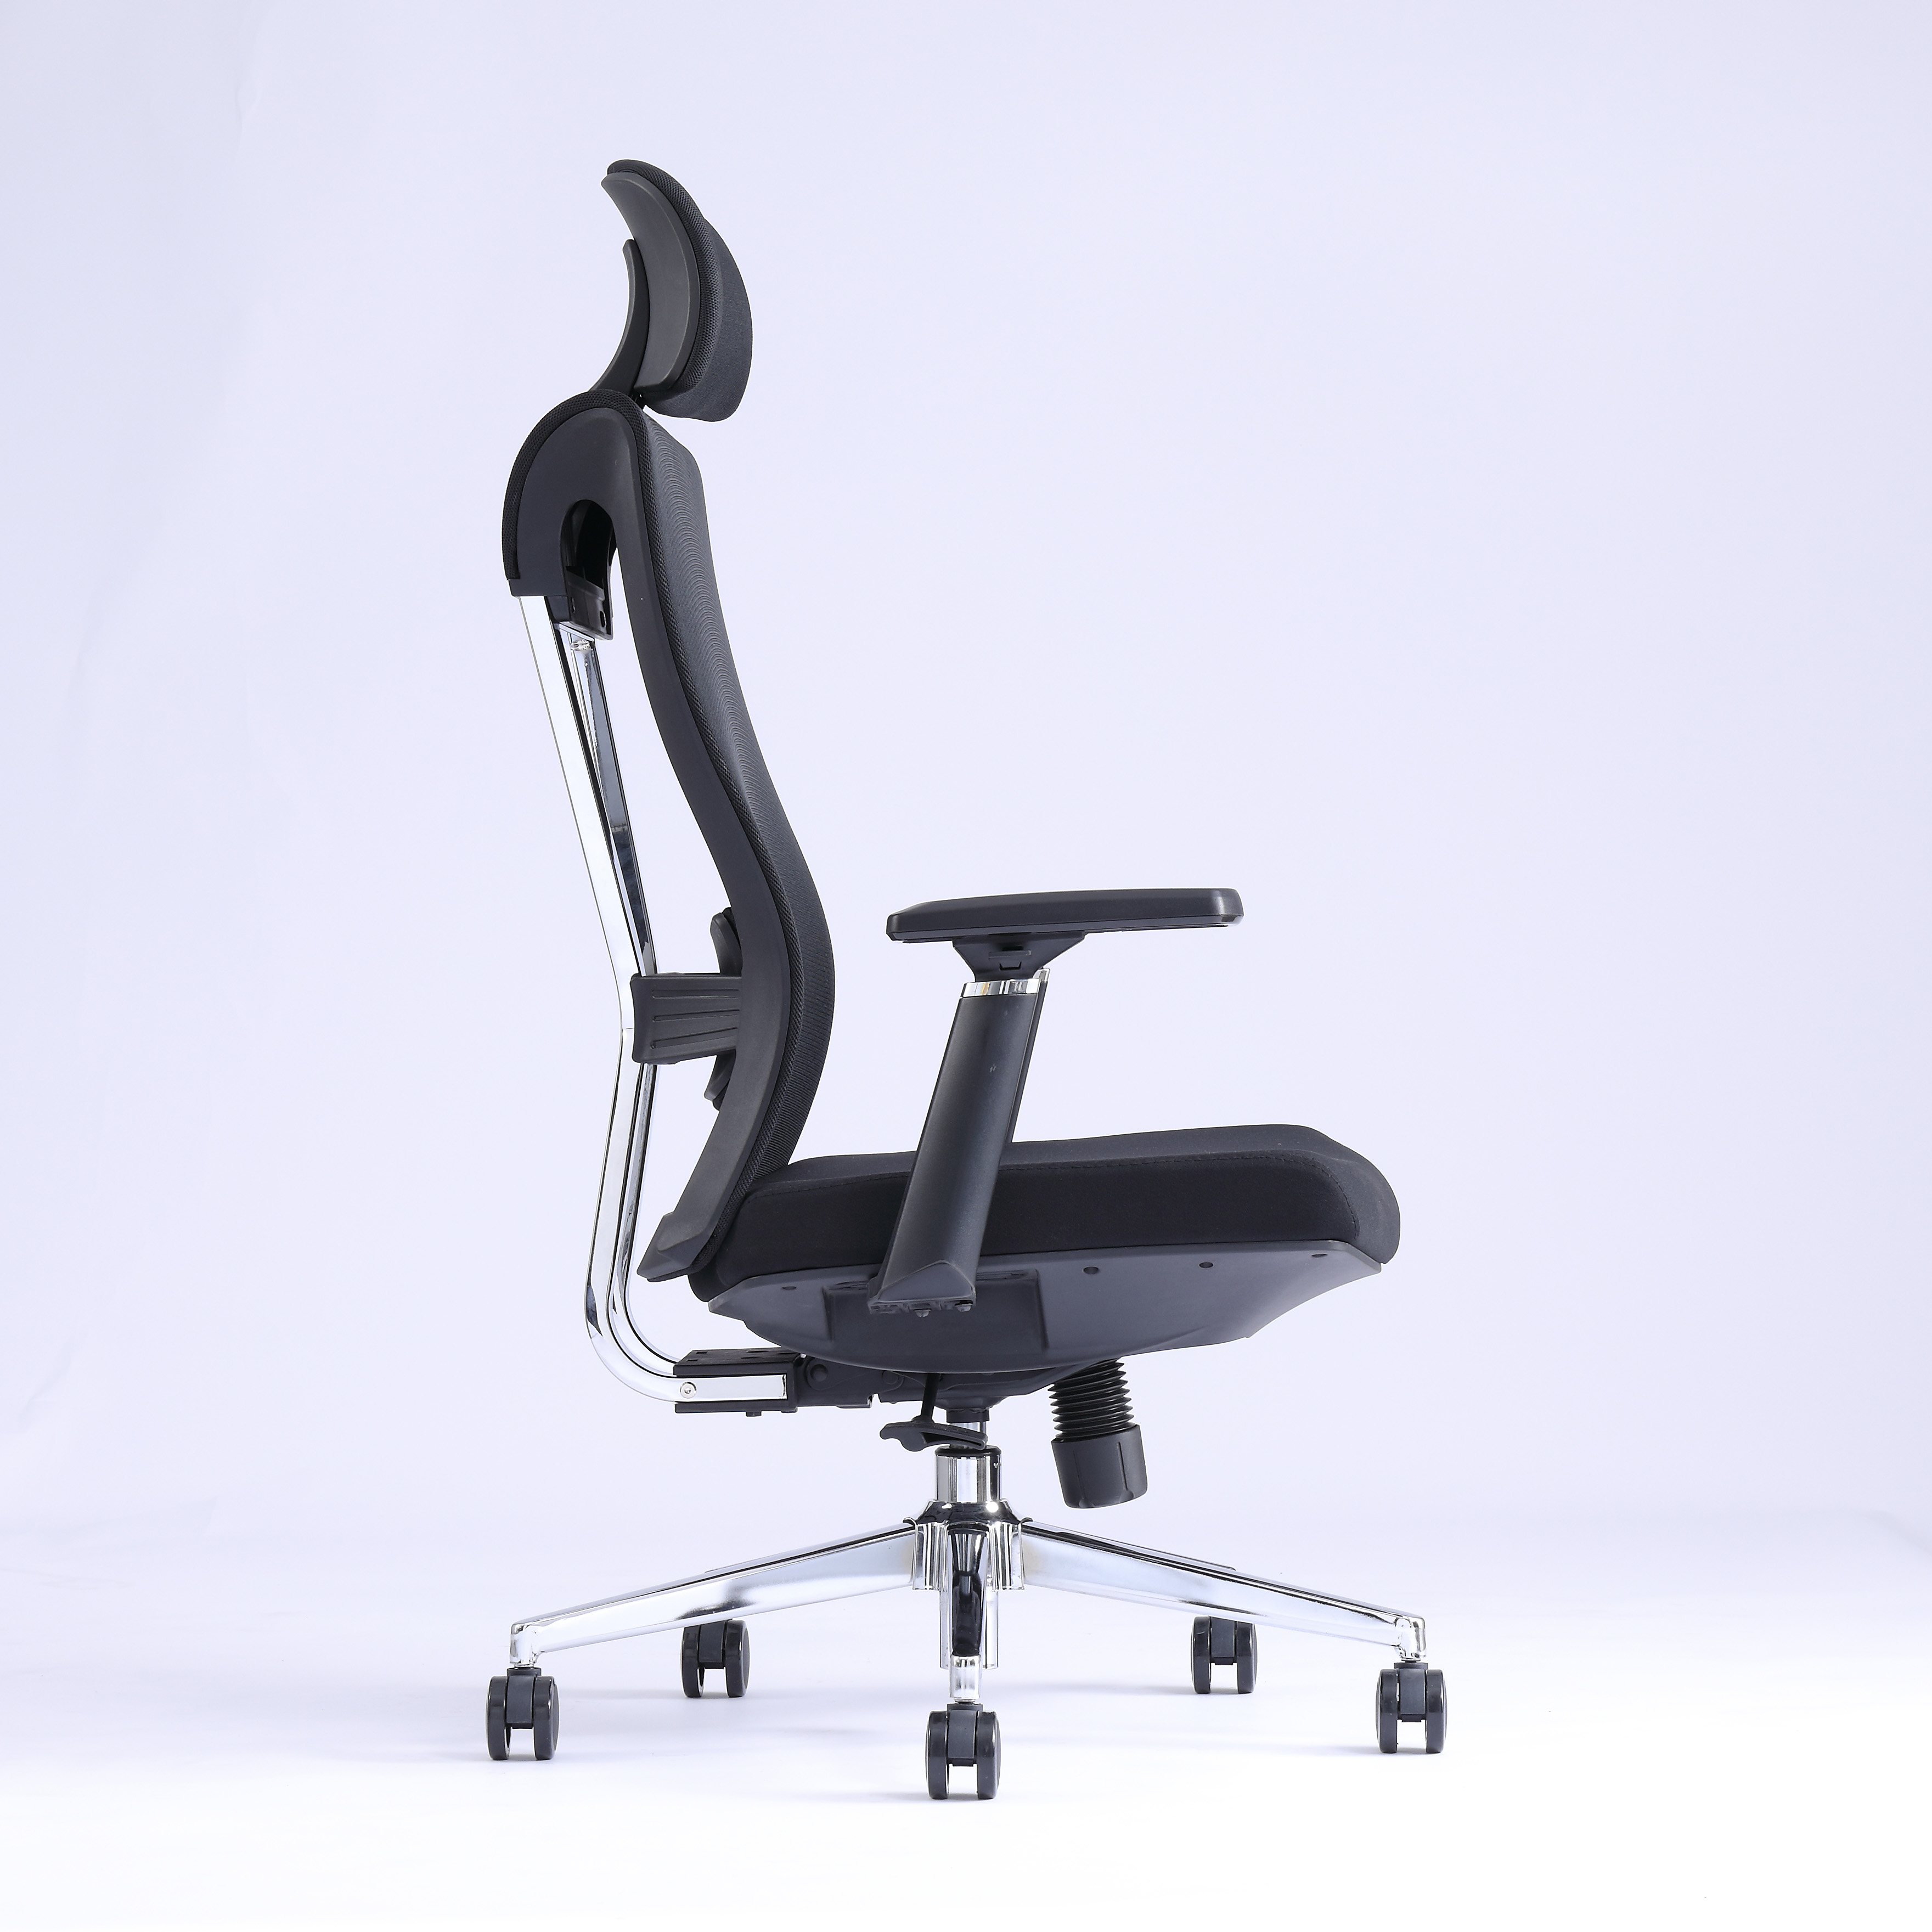 Modern Economic Economic Office Furniture Chair Mesh Seat Altura Ajuste Cadeira de Mesh de escritório 1 Cadeira1